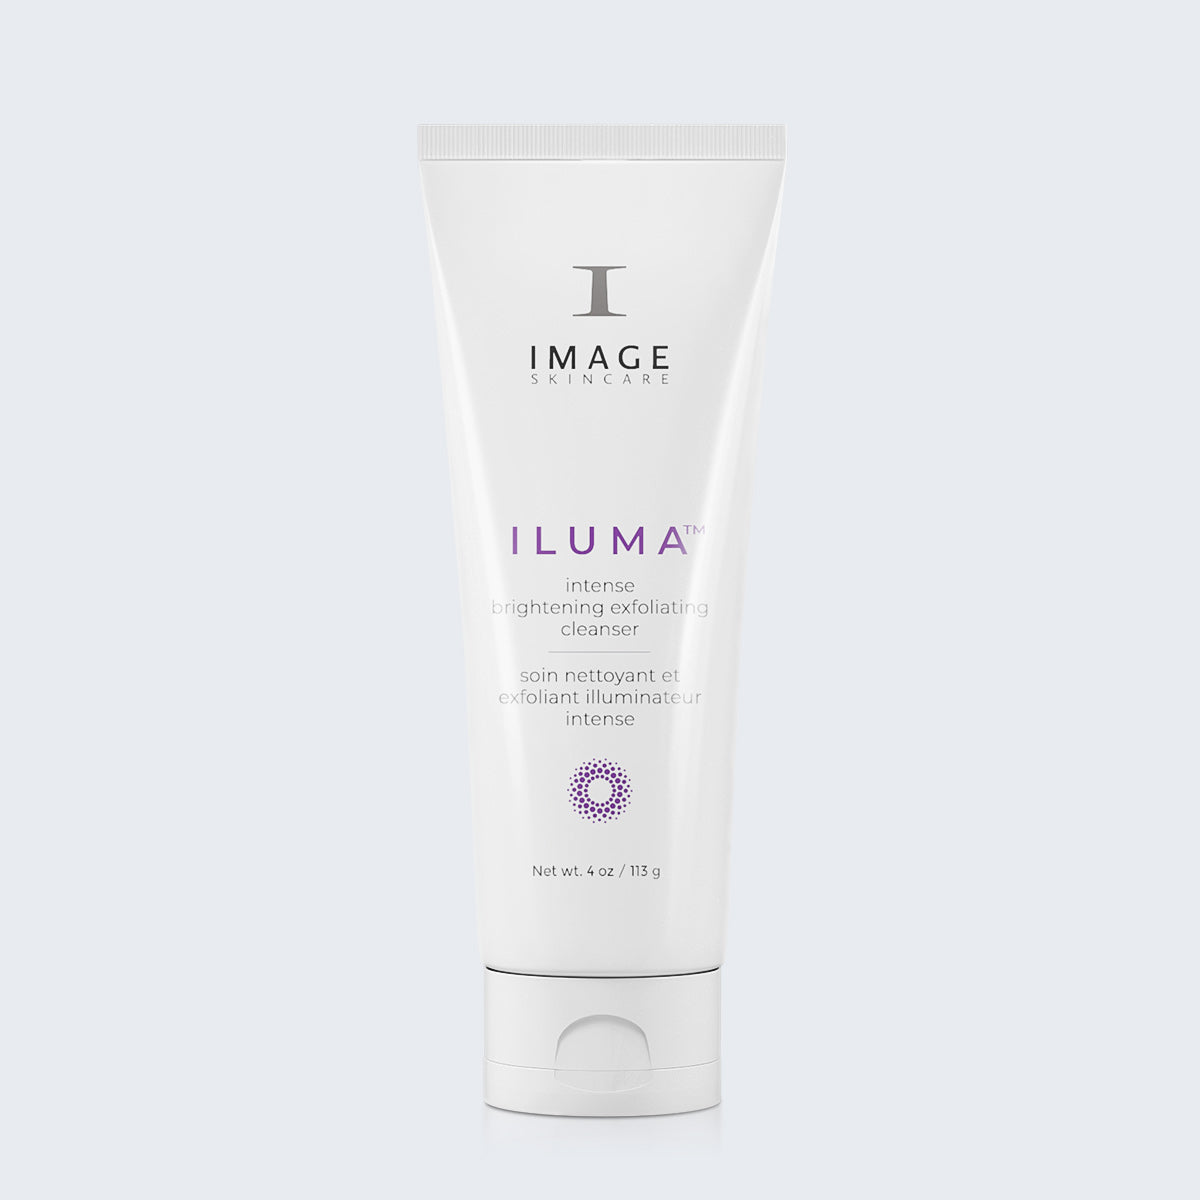 IMAGE | ILUMA Intense Brightening Exfoliating Cleanser (4 oz)